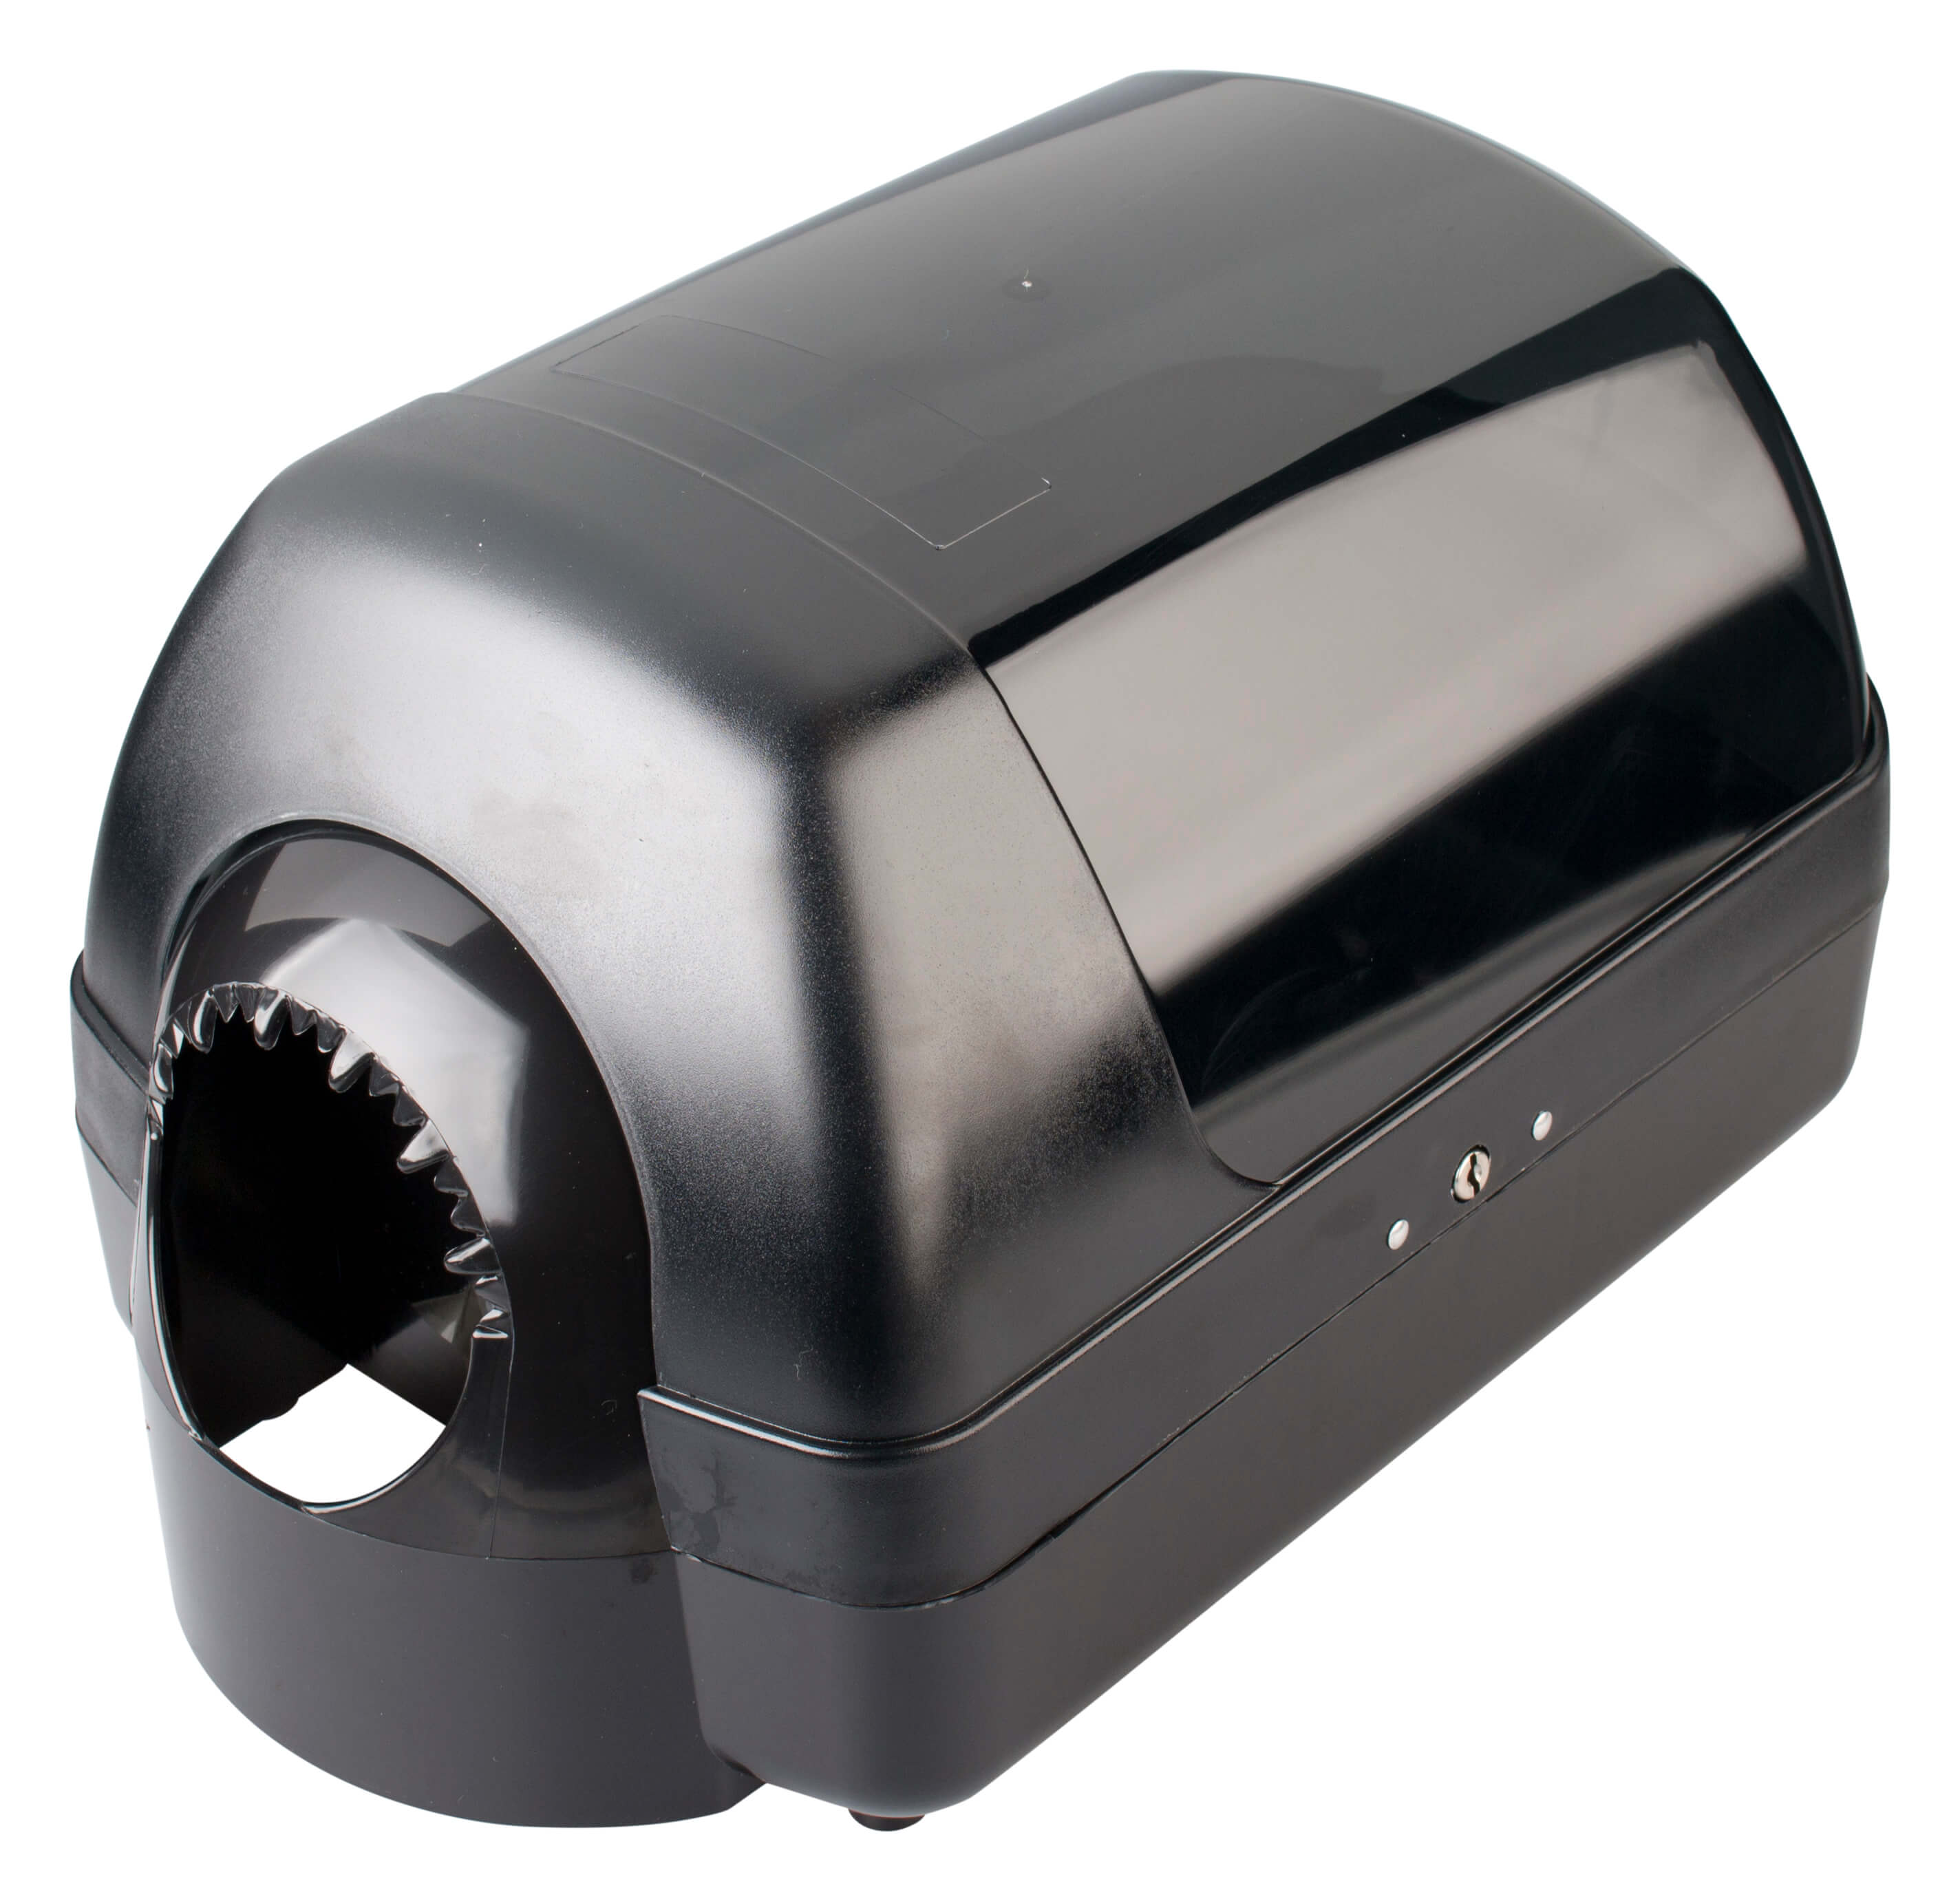 Centerpull paper towel dispenser HP-99519 - for MIDI rolls